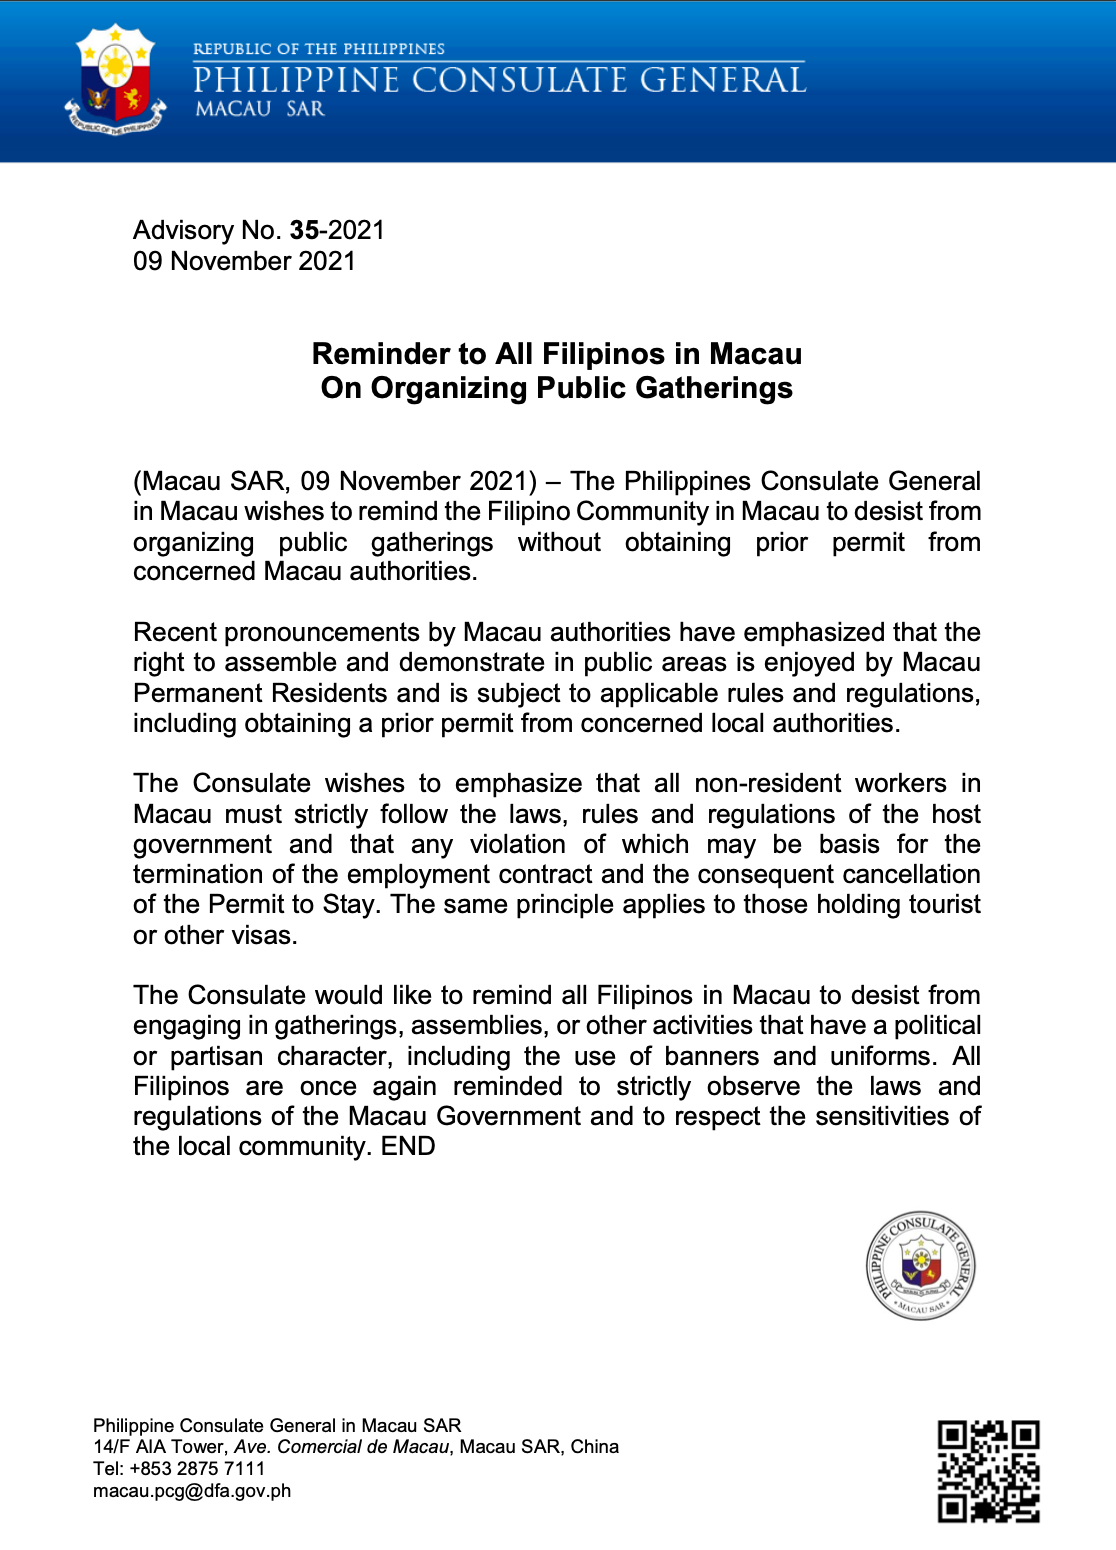 Philippine Consulate General in Macao Advisory No 35-2021